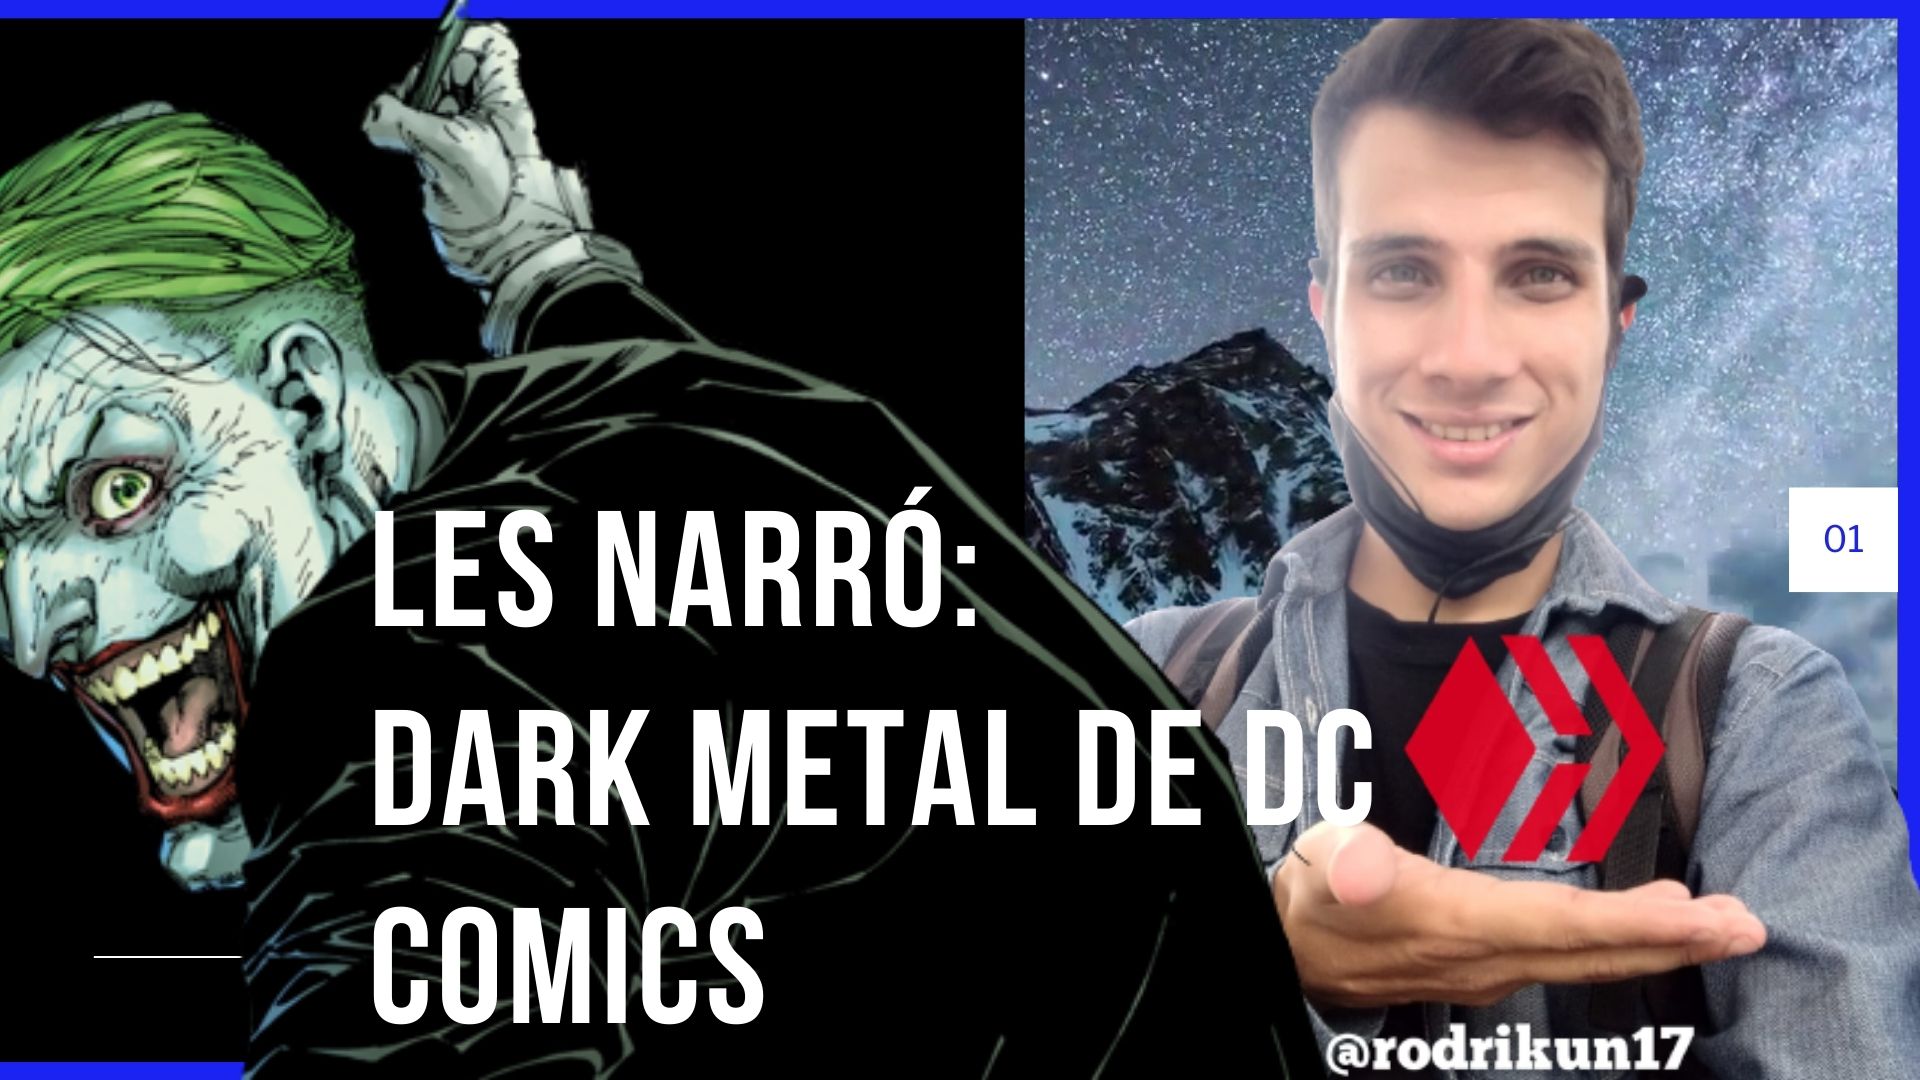 Les Narró Dark Metal de DC Comics.jpg